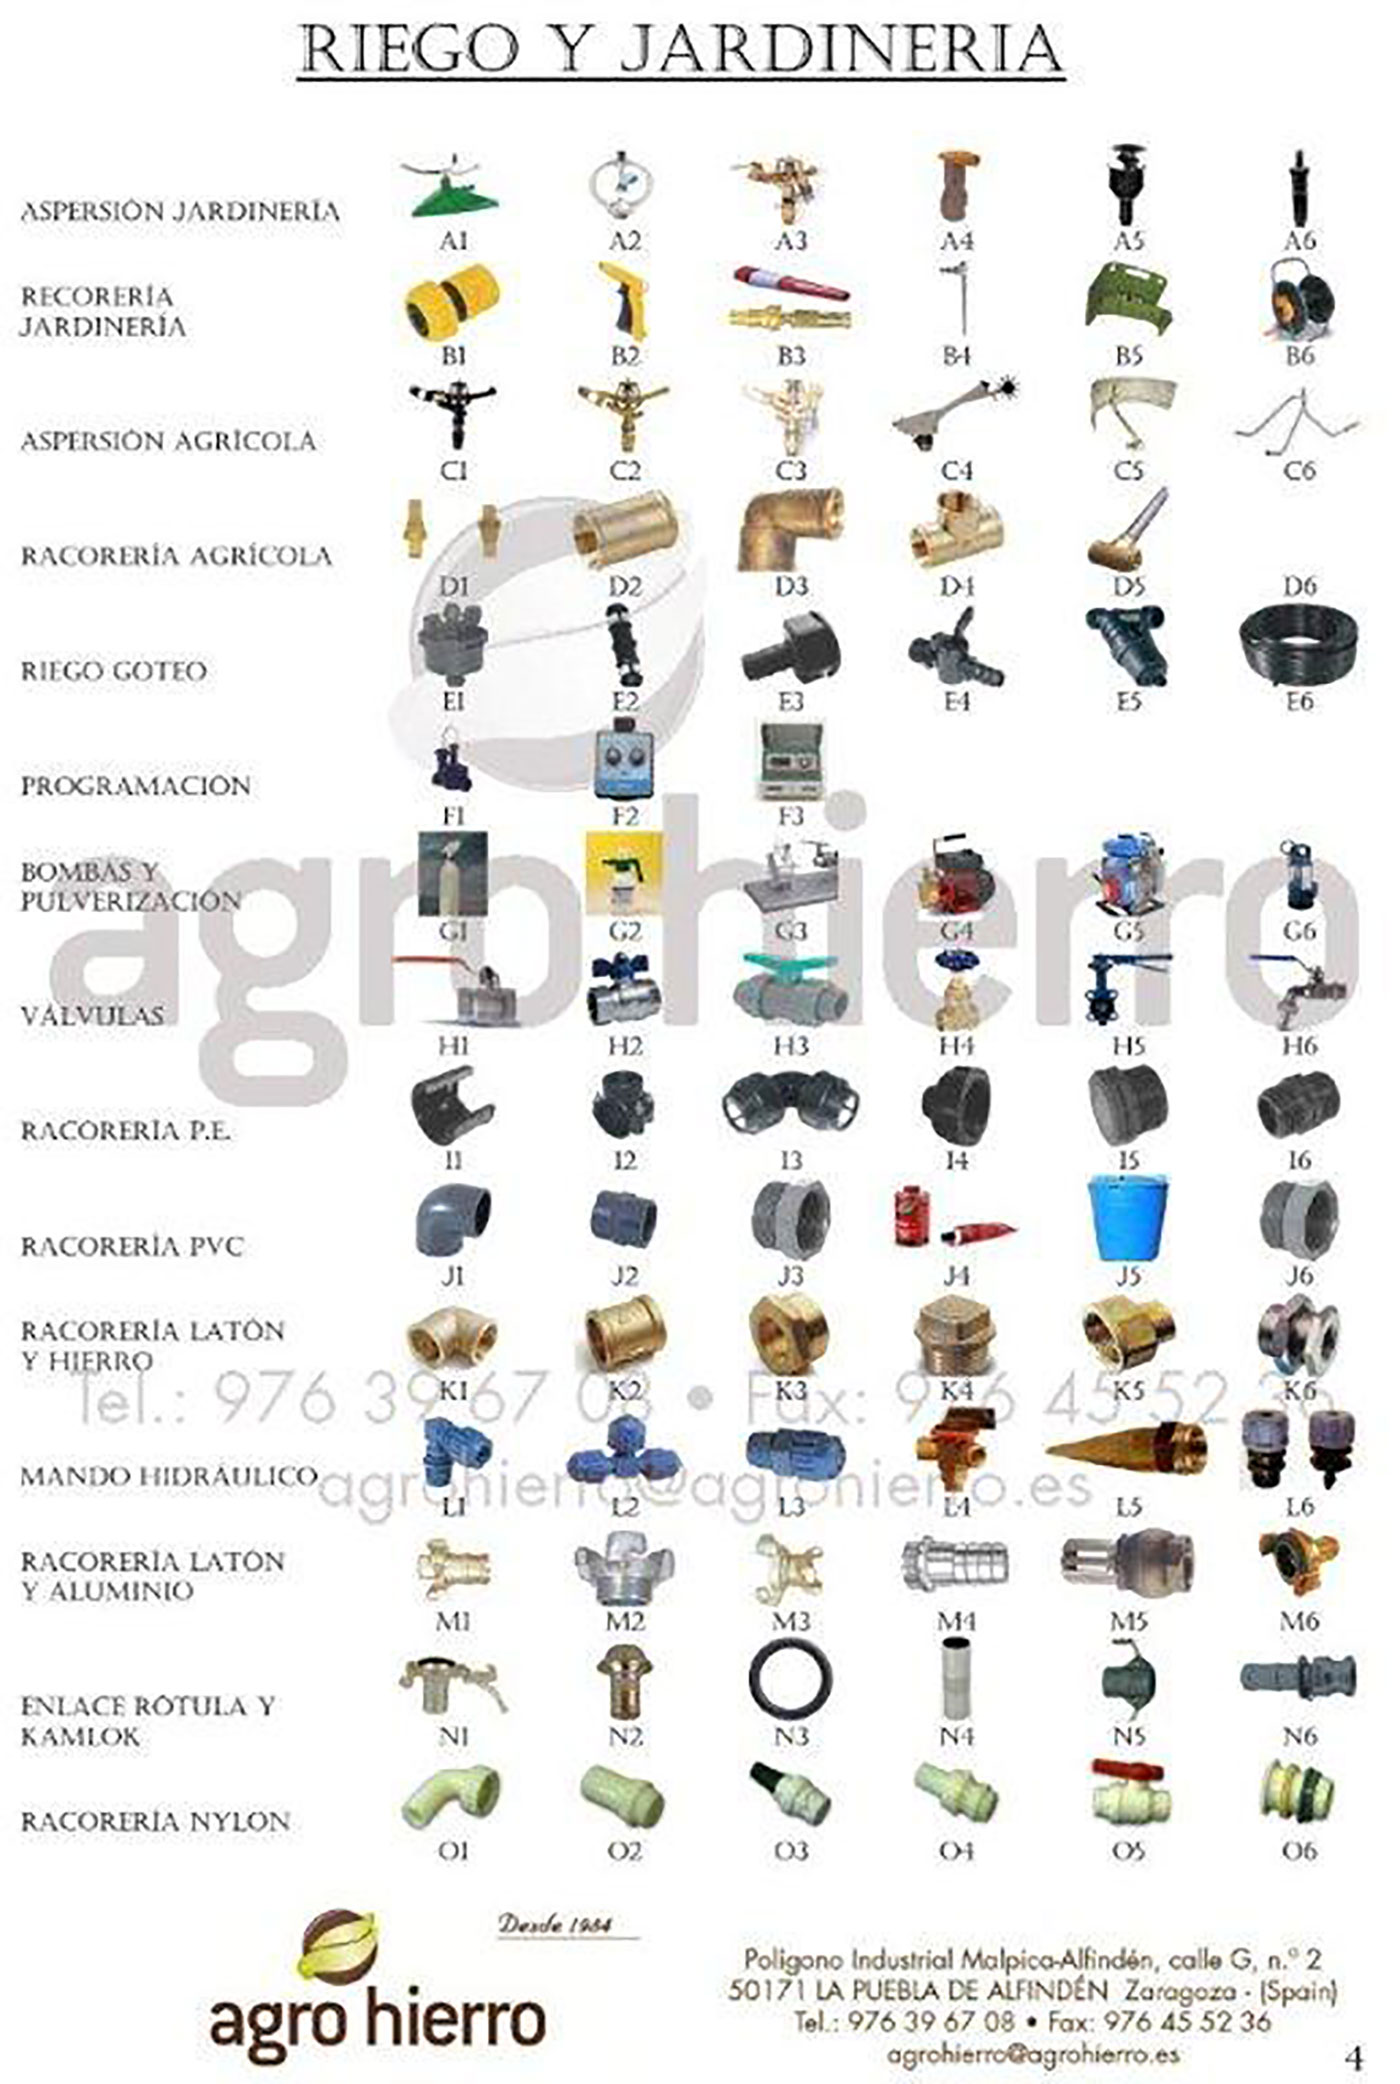 Nombre de herramientas en español